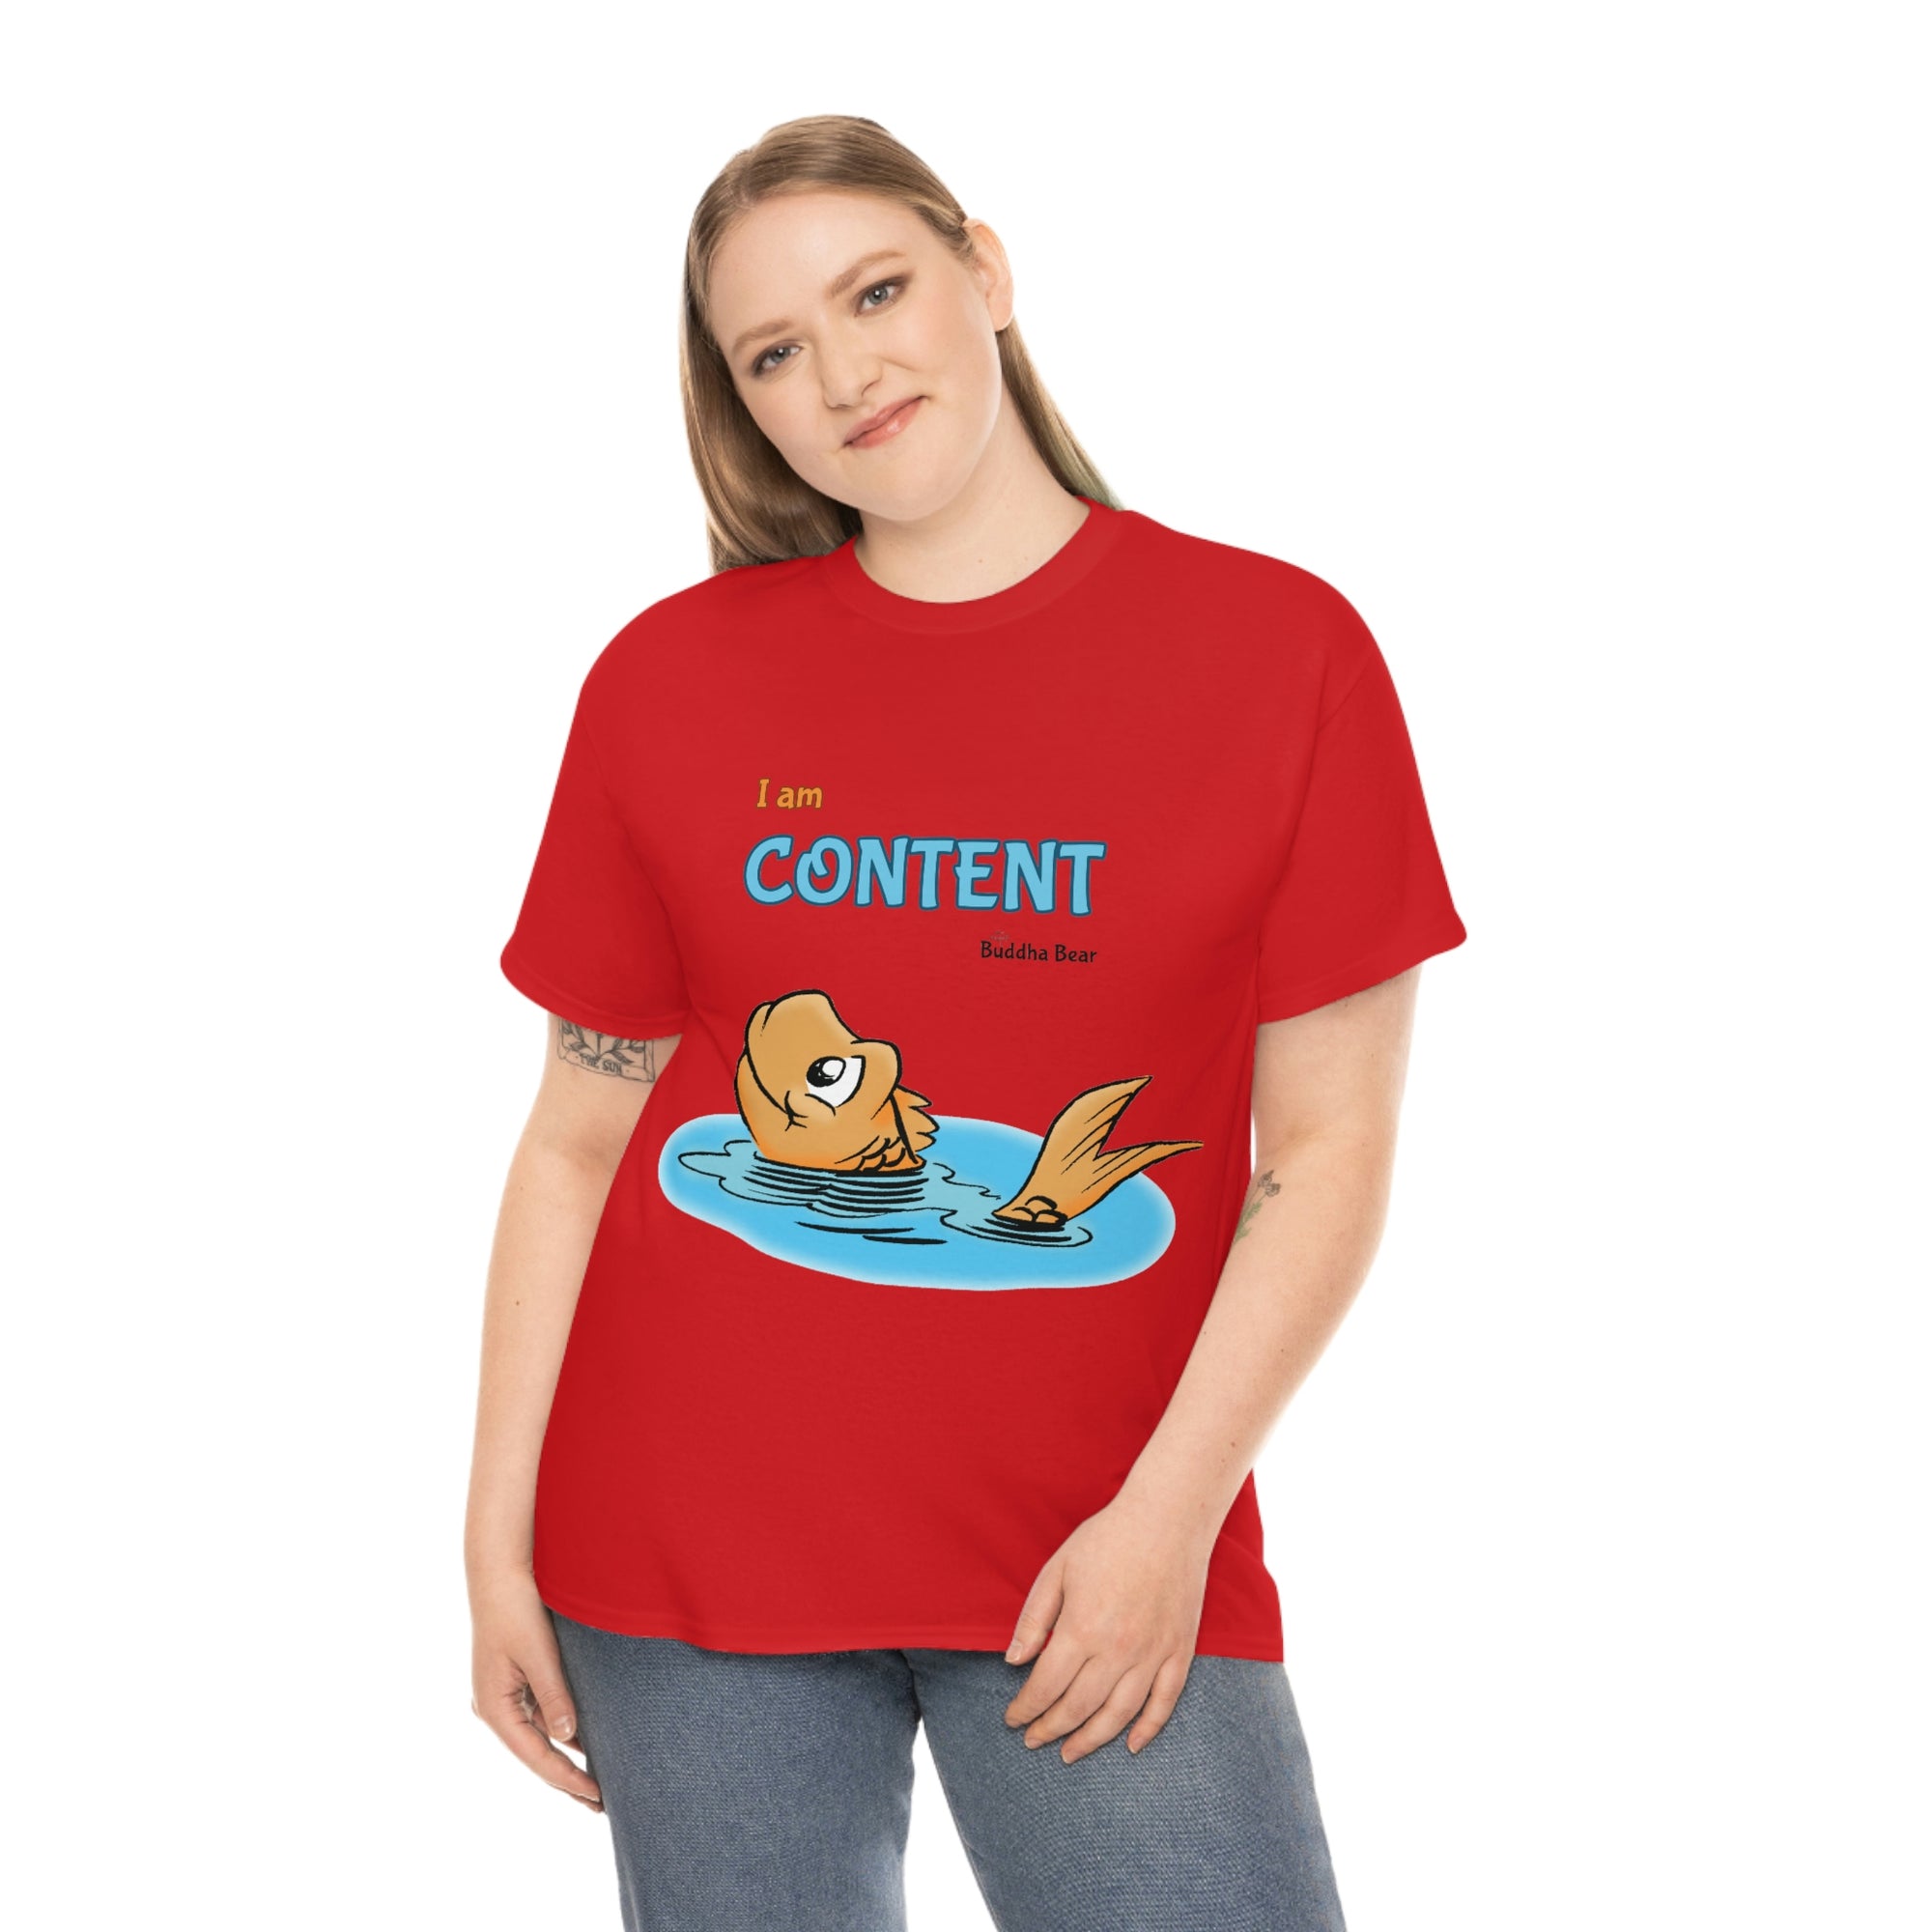 I am Content - Unisex T-shirt